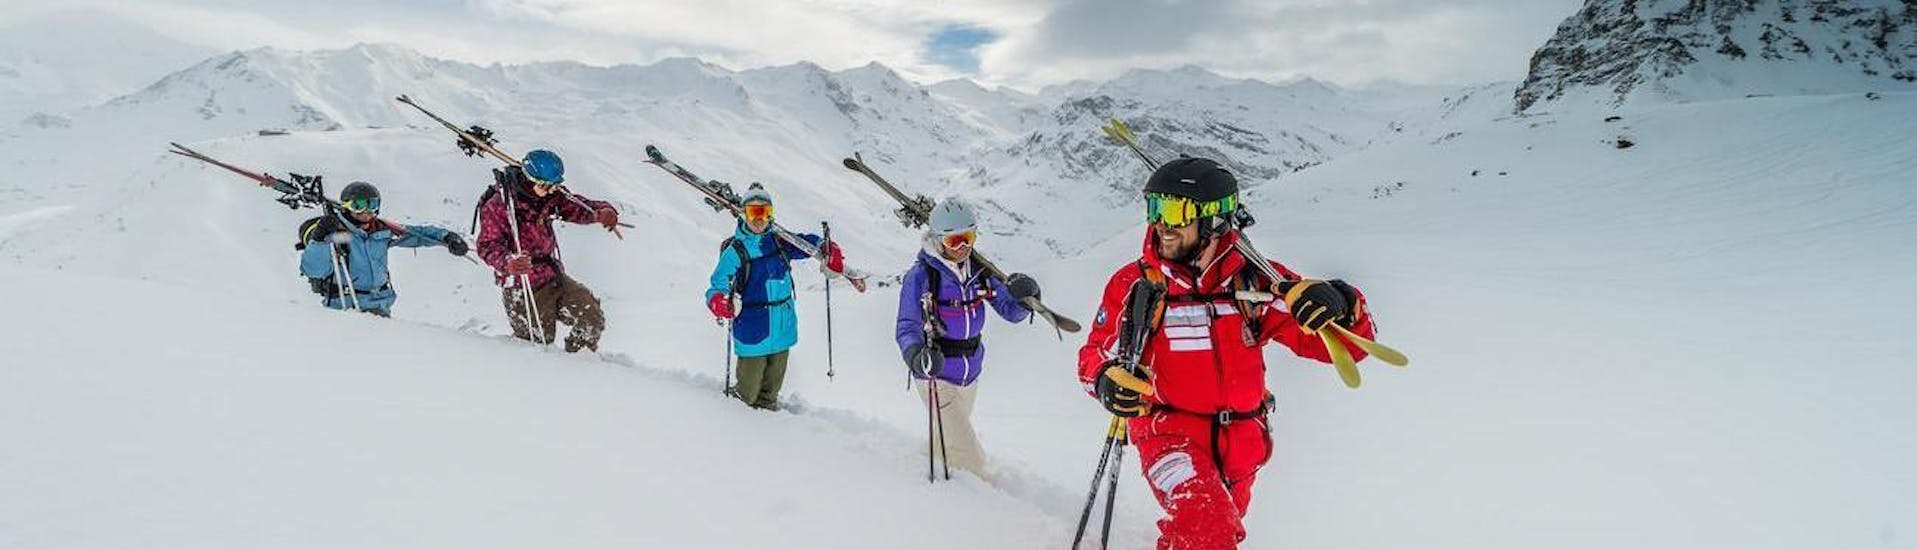 Eine Gruppe von Skibegeisterten teilt die Leidenschaft für das Skifahren abseits der Pisten während des privaten Freeride-Skikurses, während sie mit einem professionellen Skilehrer von ESF Val d'Isère die neuen Gebiete erkunden - Für alle Levels.